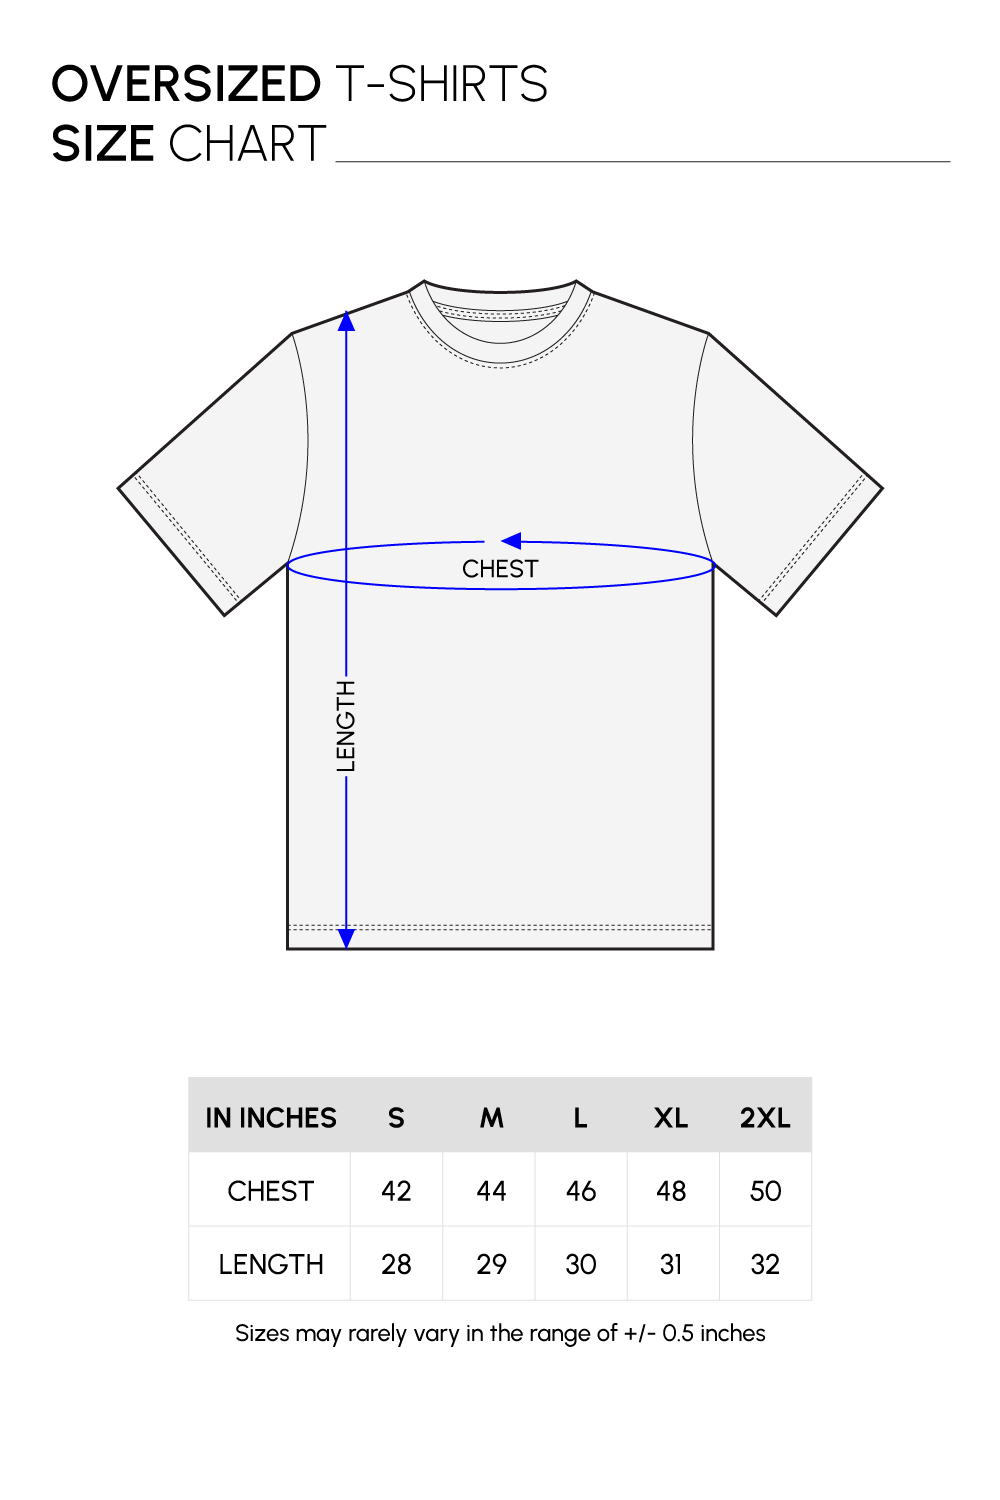 Unisex Oversized T-shirt Size Chart